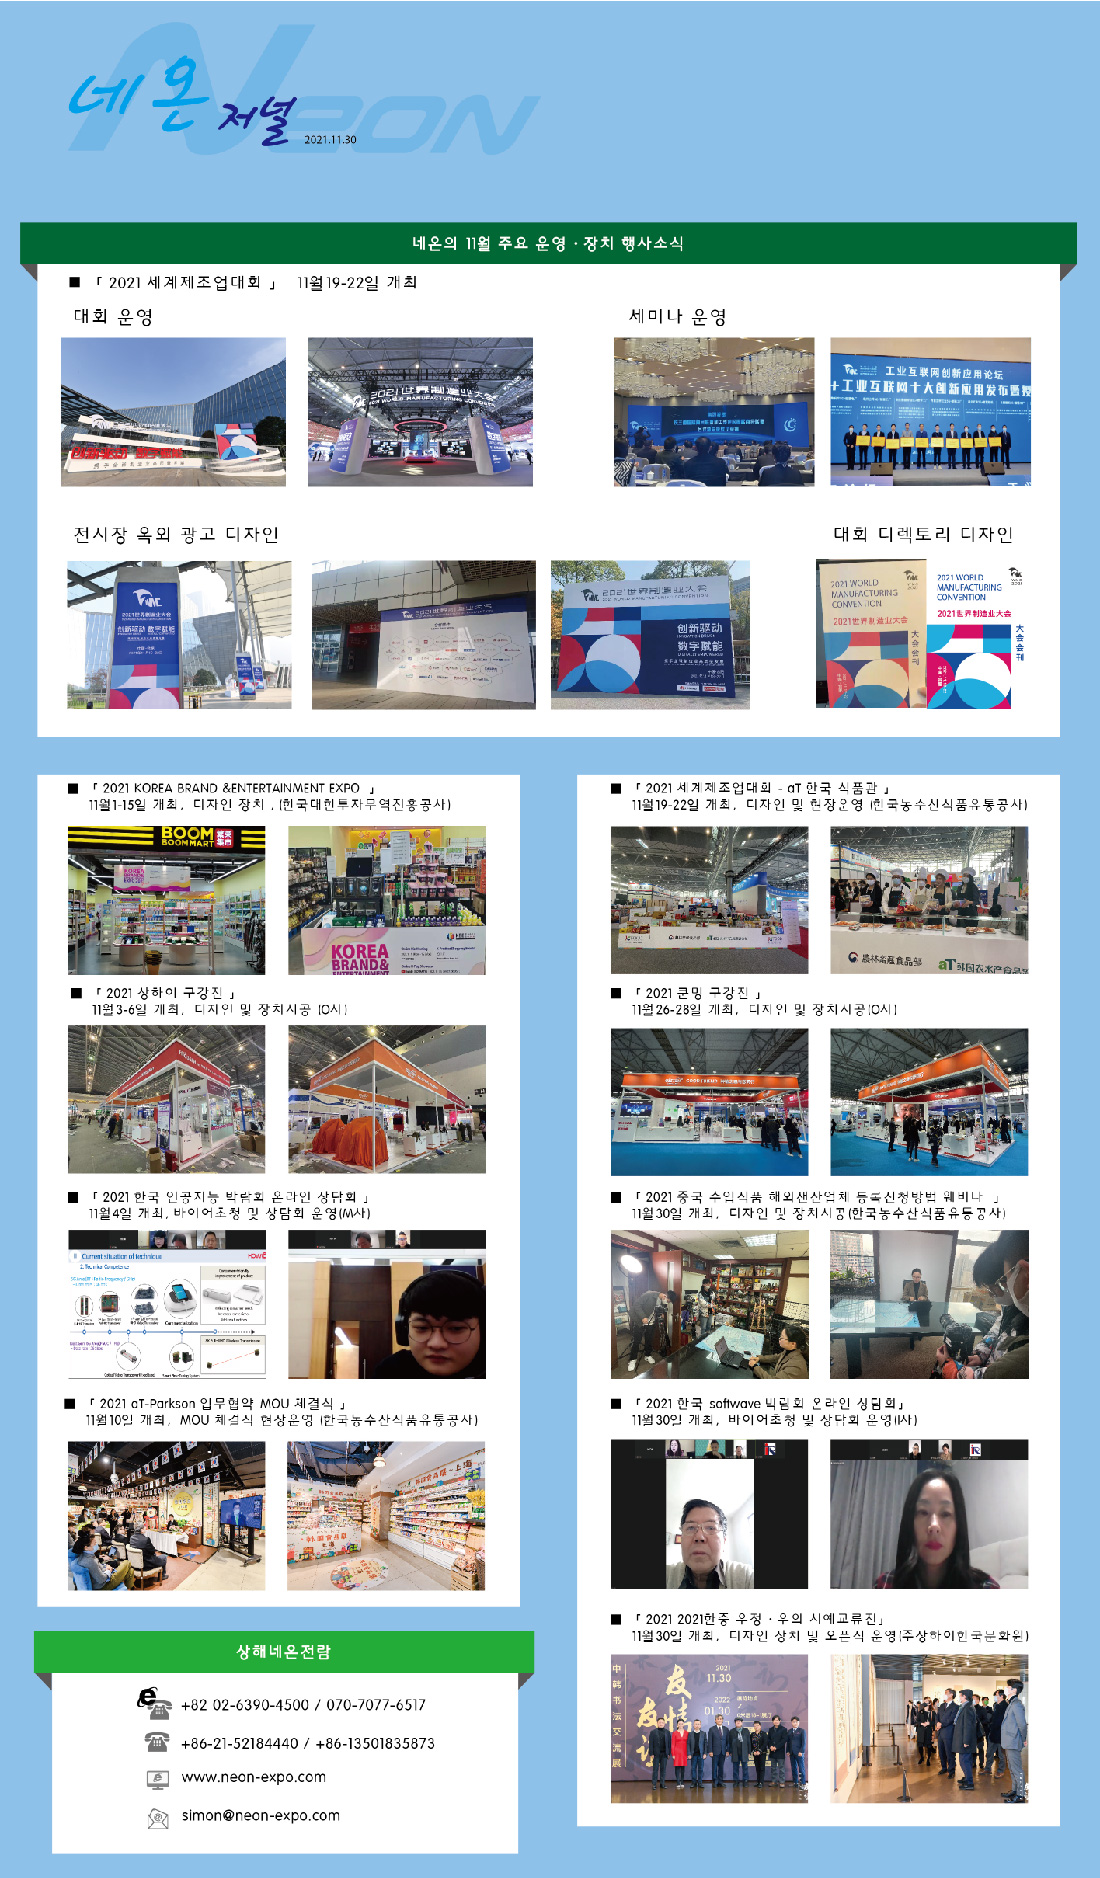 네온의 11월 주요 운영 · 장치 행사소식